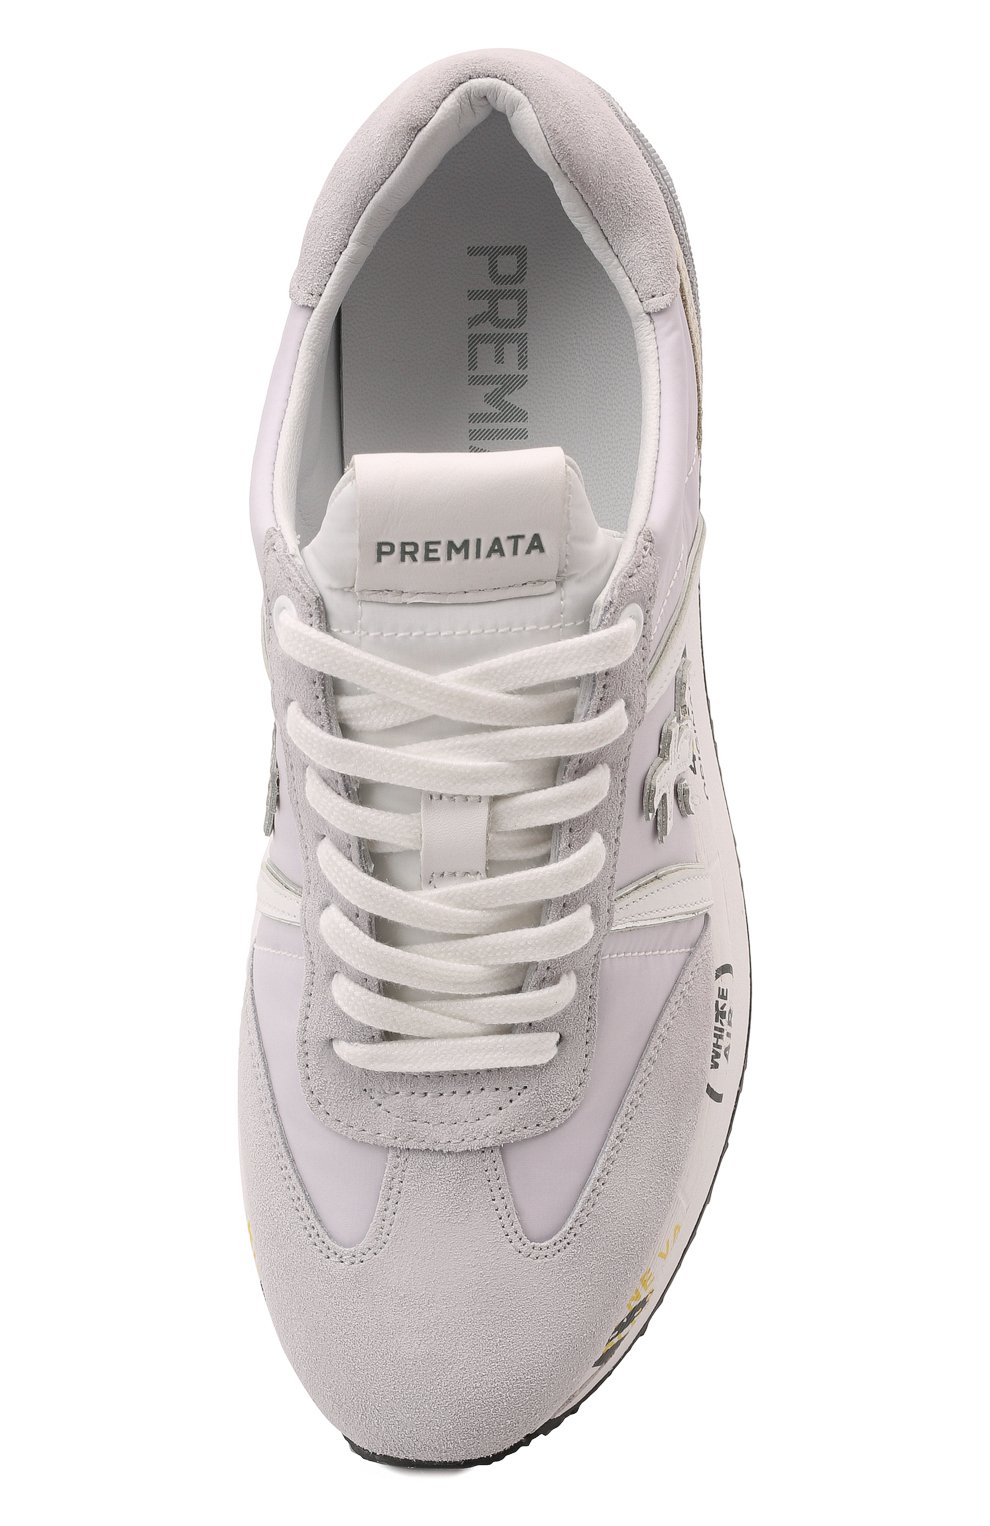 Комбинированные кроссовки Conny Premiata C0NNY/VAR5616, цвет серый, размер 41 C0NNY/VAR5616 - фото 6